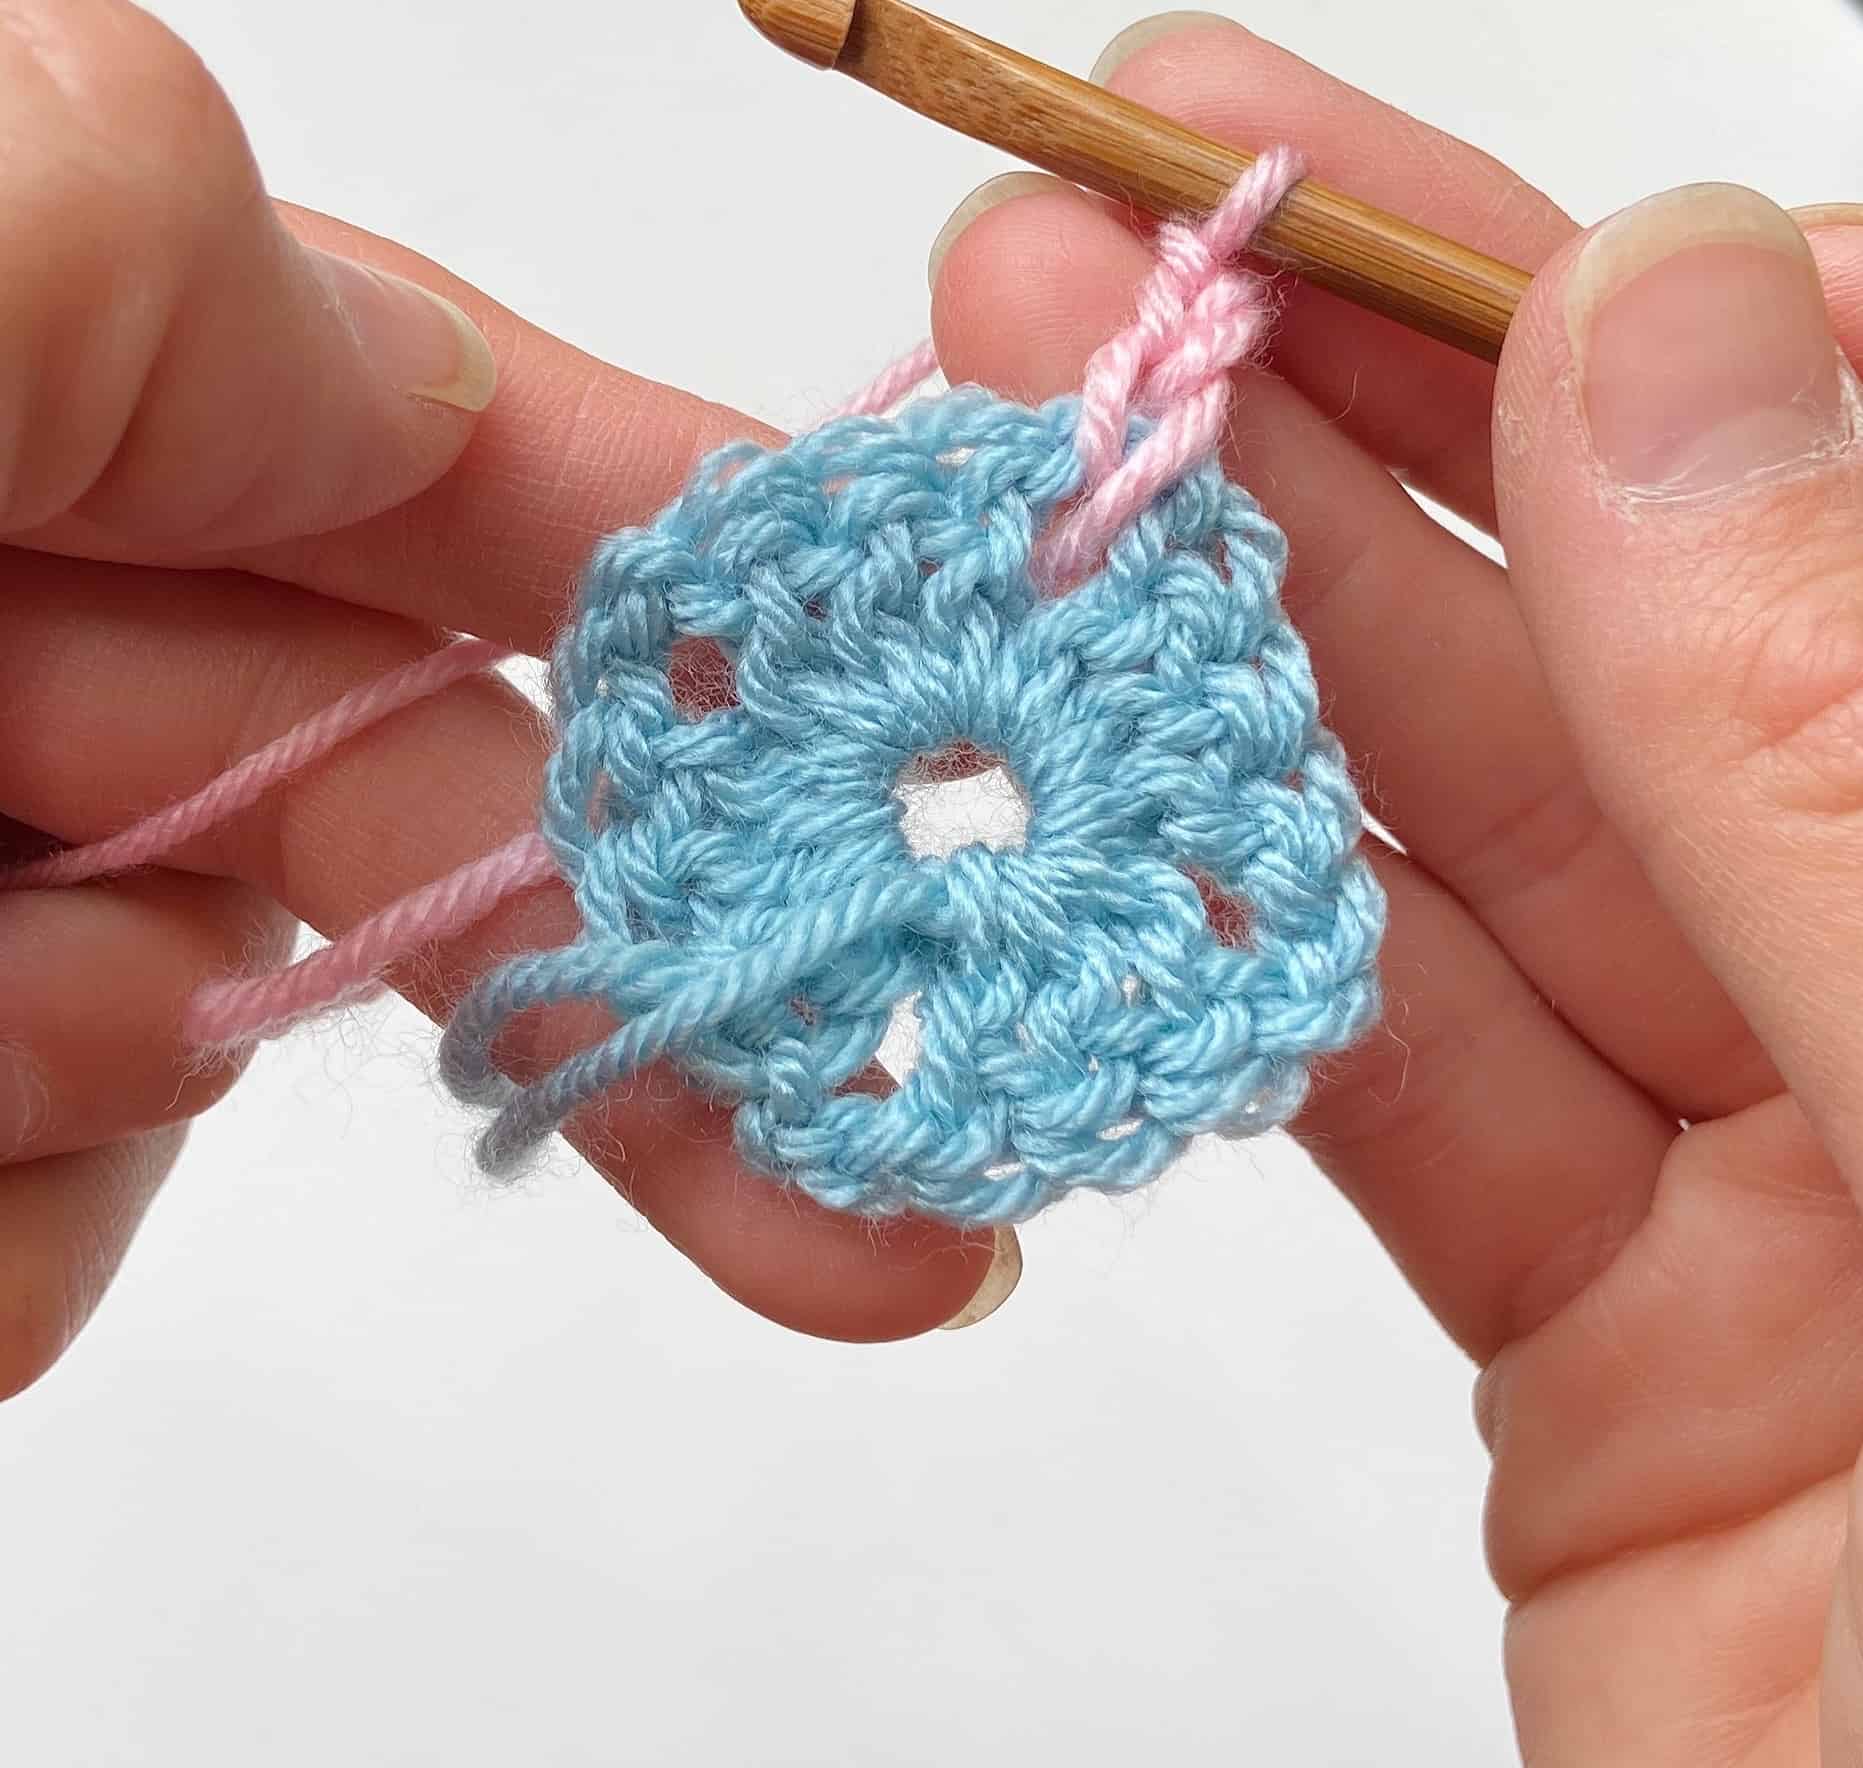 joining new yarn in crochet